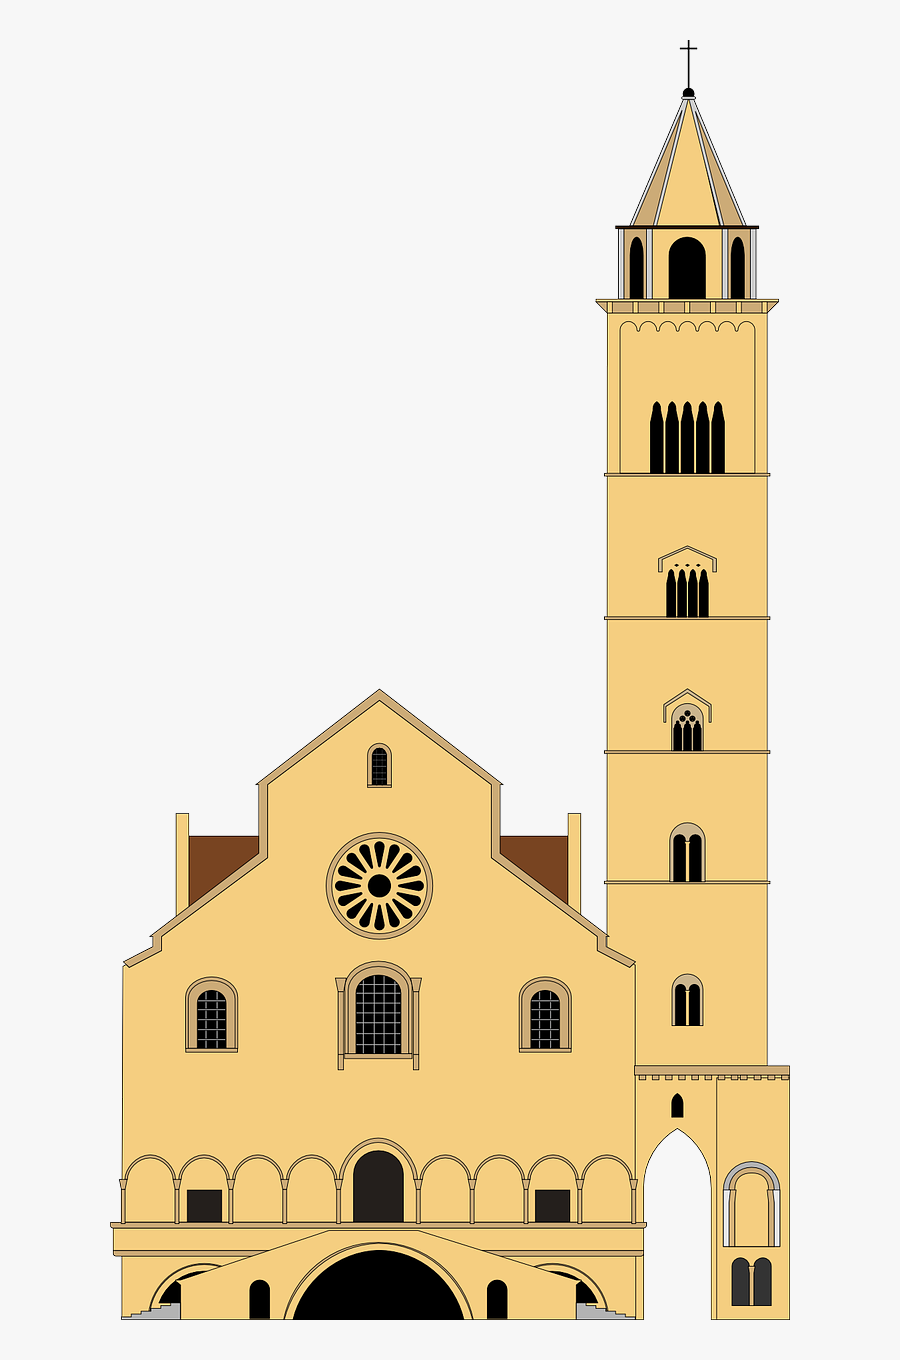 Church Architecture Building Free Picture - Disegno Della Cattedrale Di Trani, Transparent Clipart